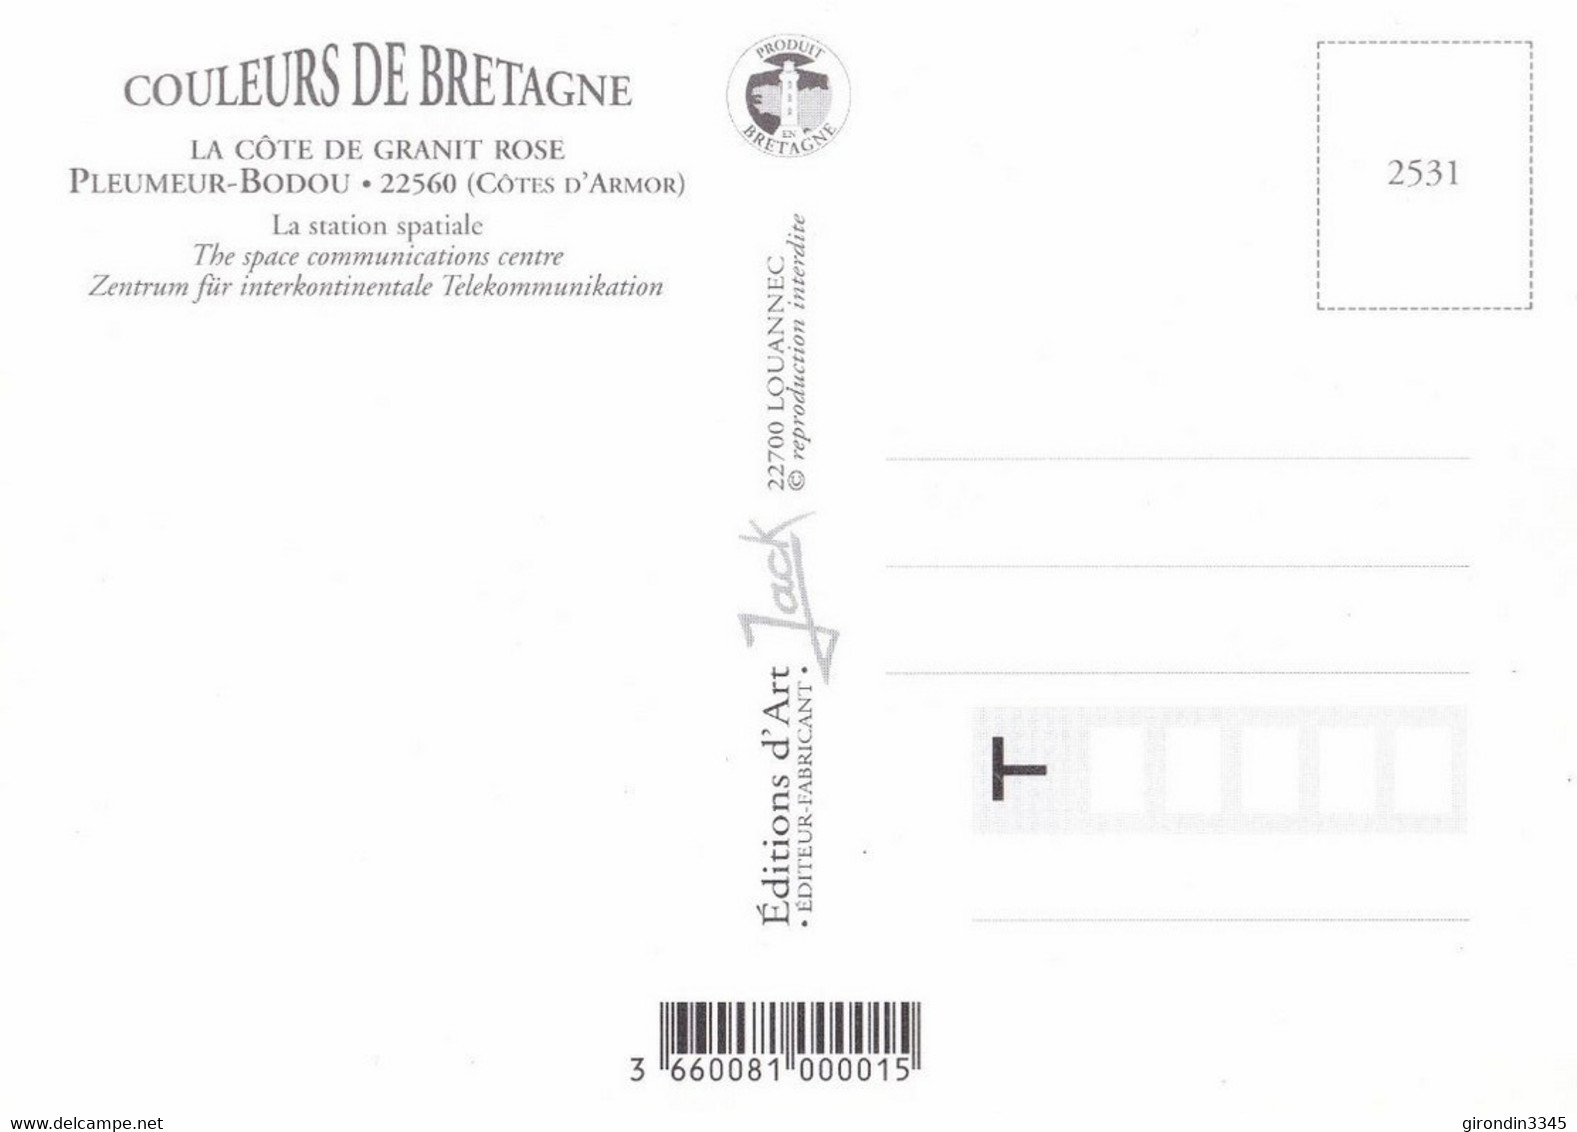 BRETAGNE Cote De Granit Rose La Station Spatiale - Pleumeur-Bodou